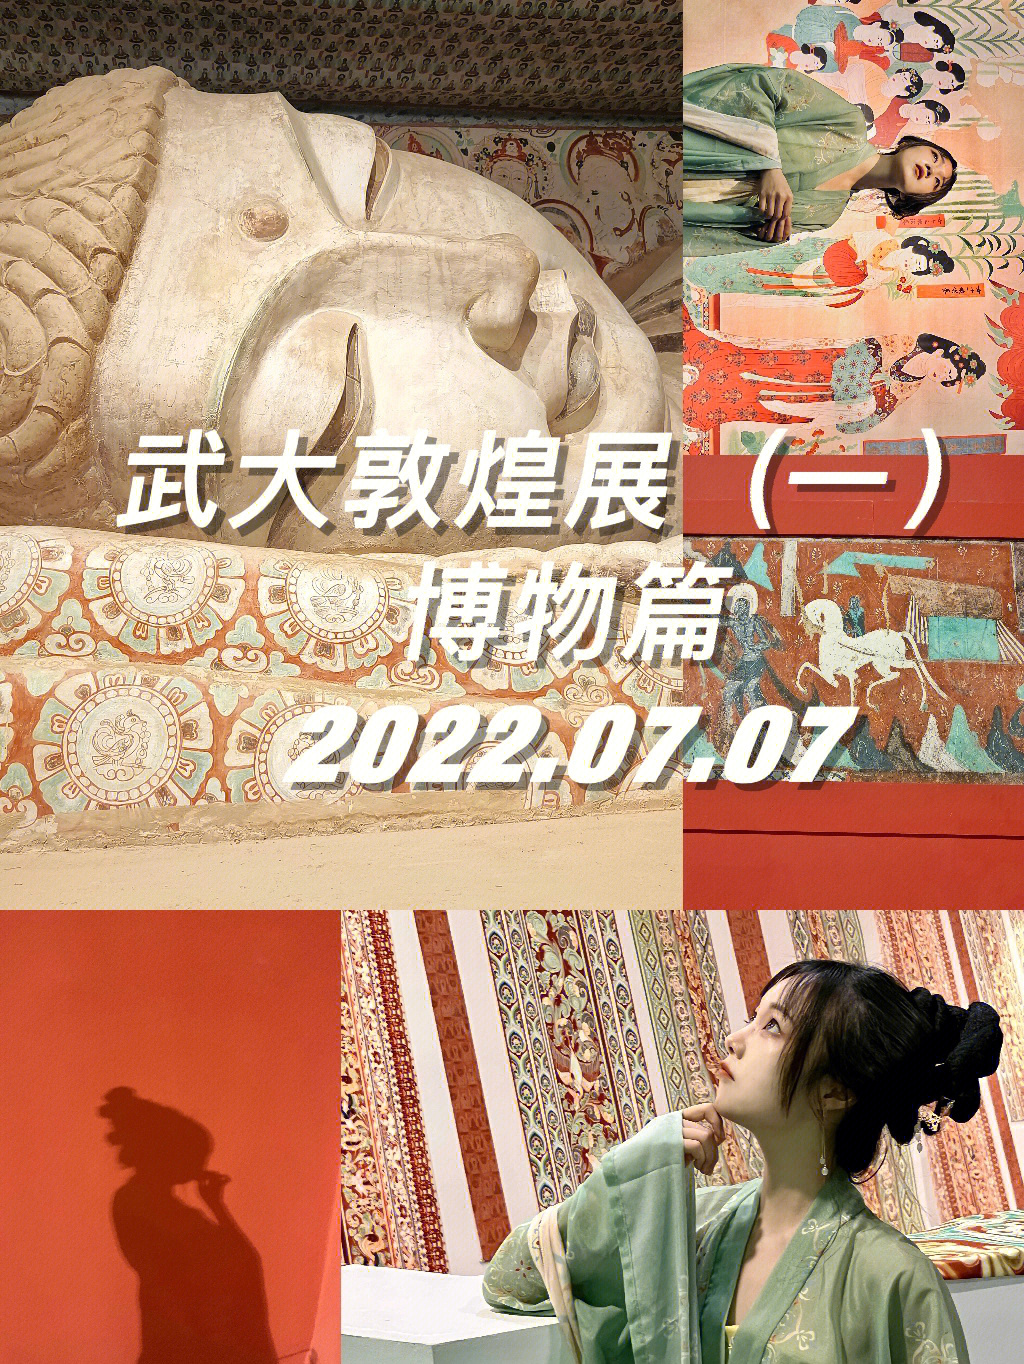 昨天刚去了武汉大学万林艺术博物馆的敦煌石窟展,先做了一篇展物篇